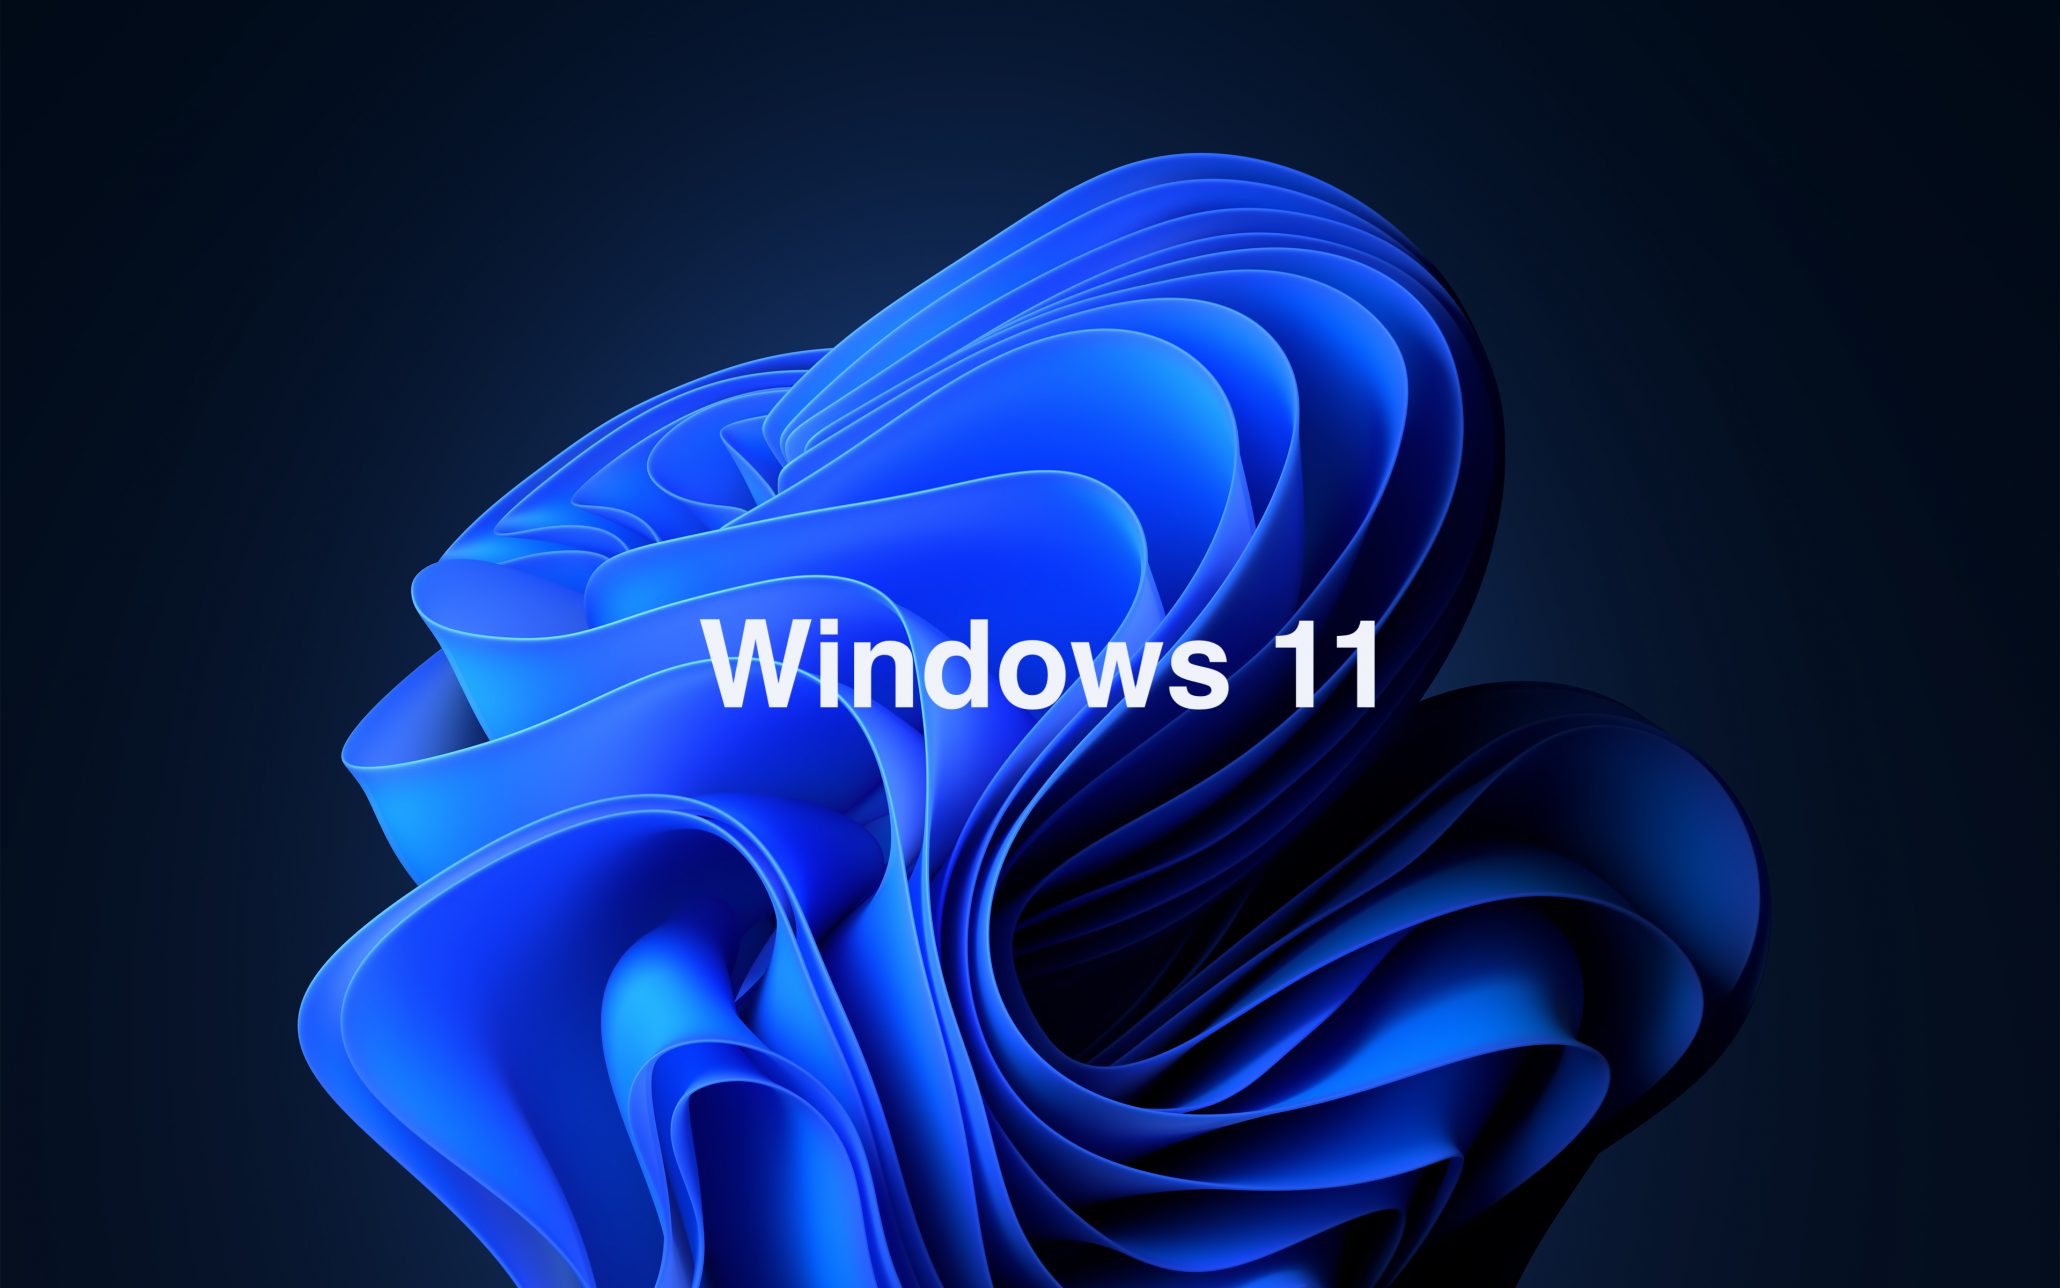 Windows 11 Windows 10